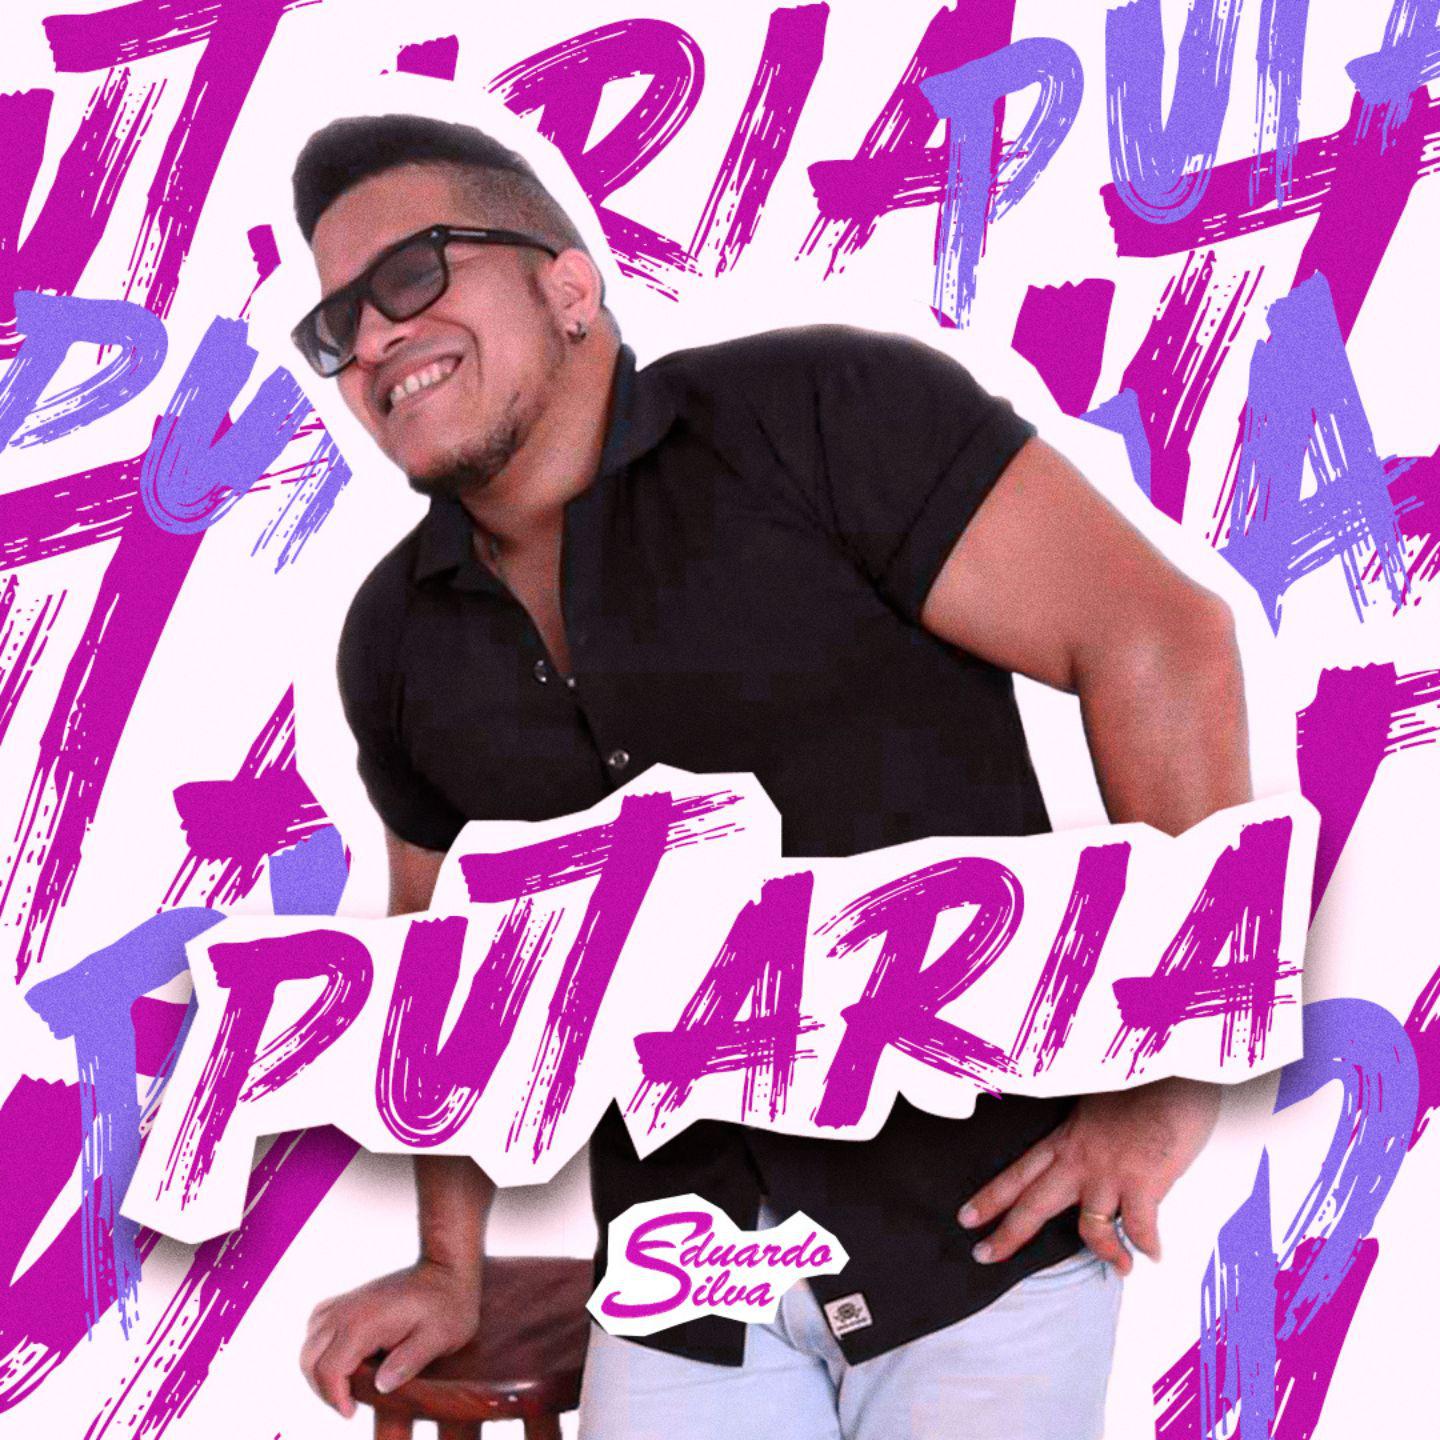 Постер альбома Putaria